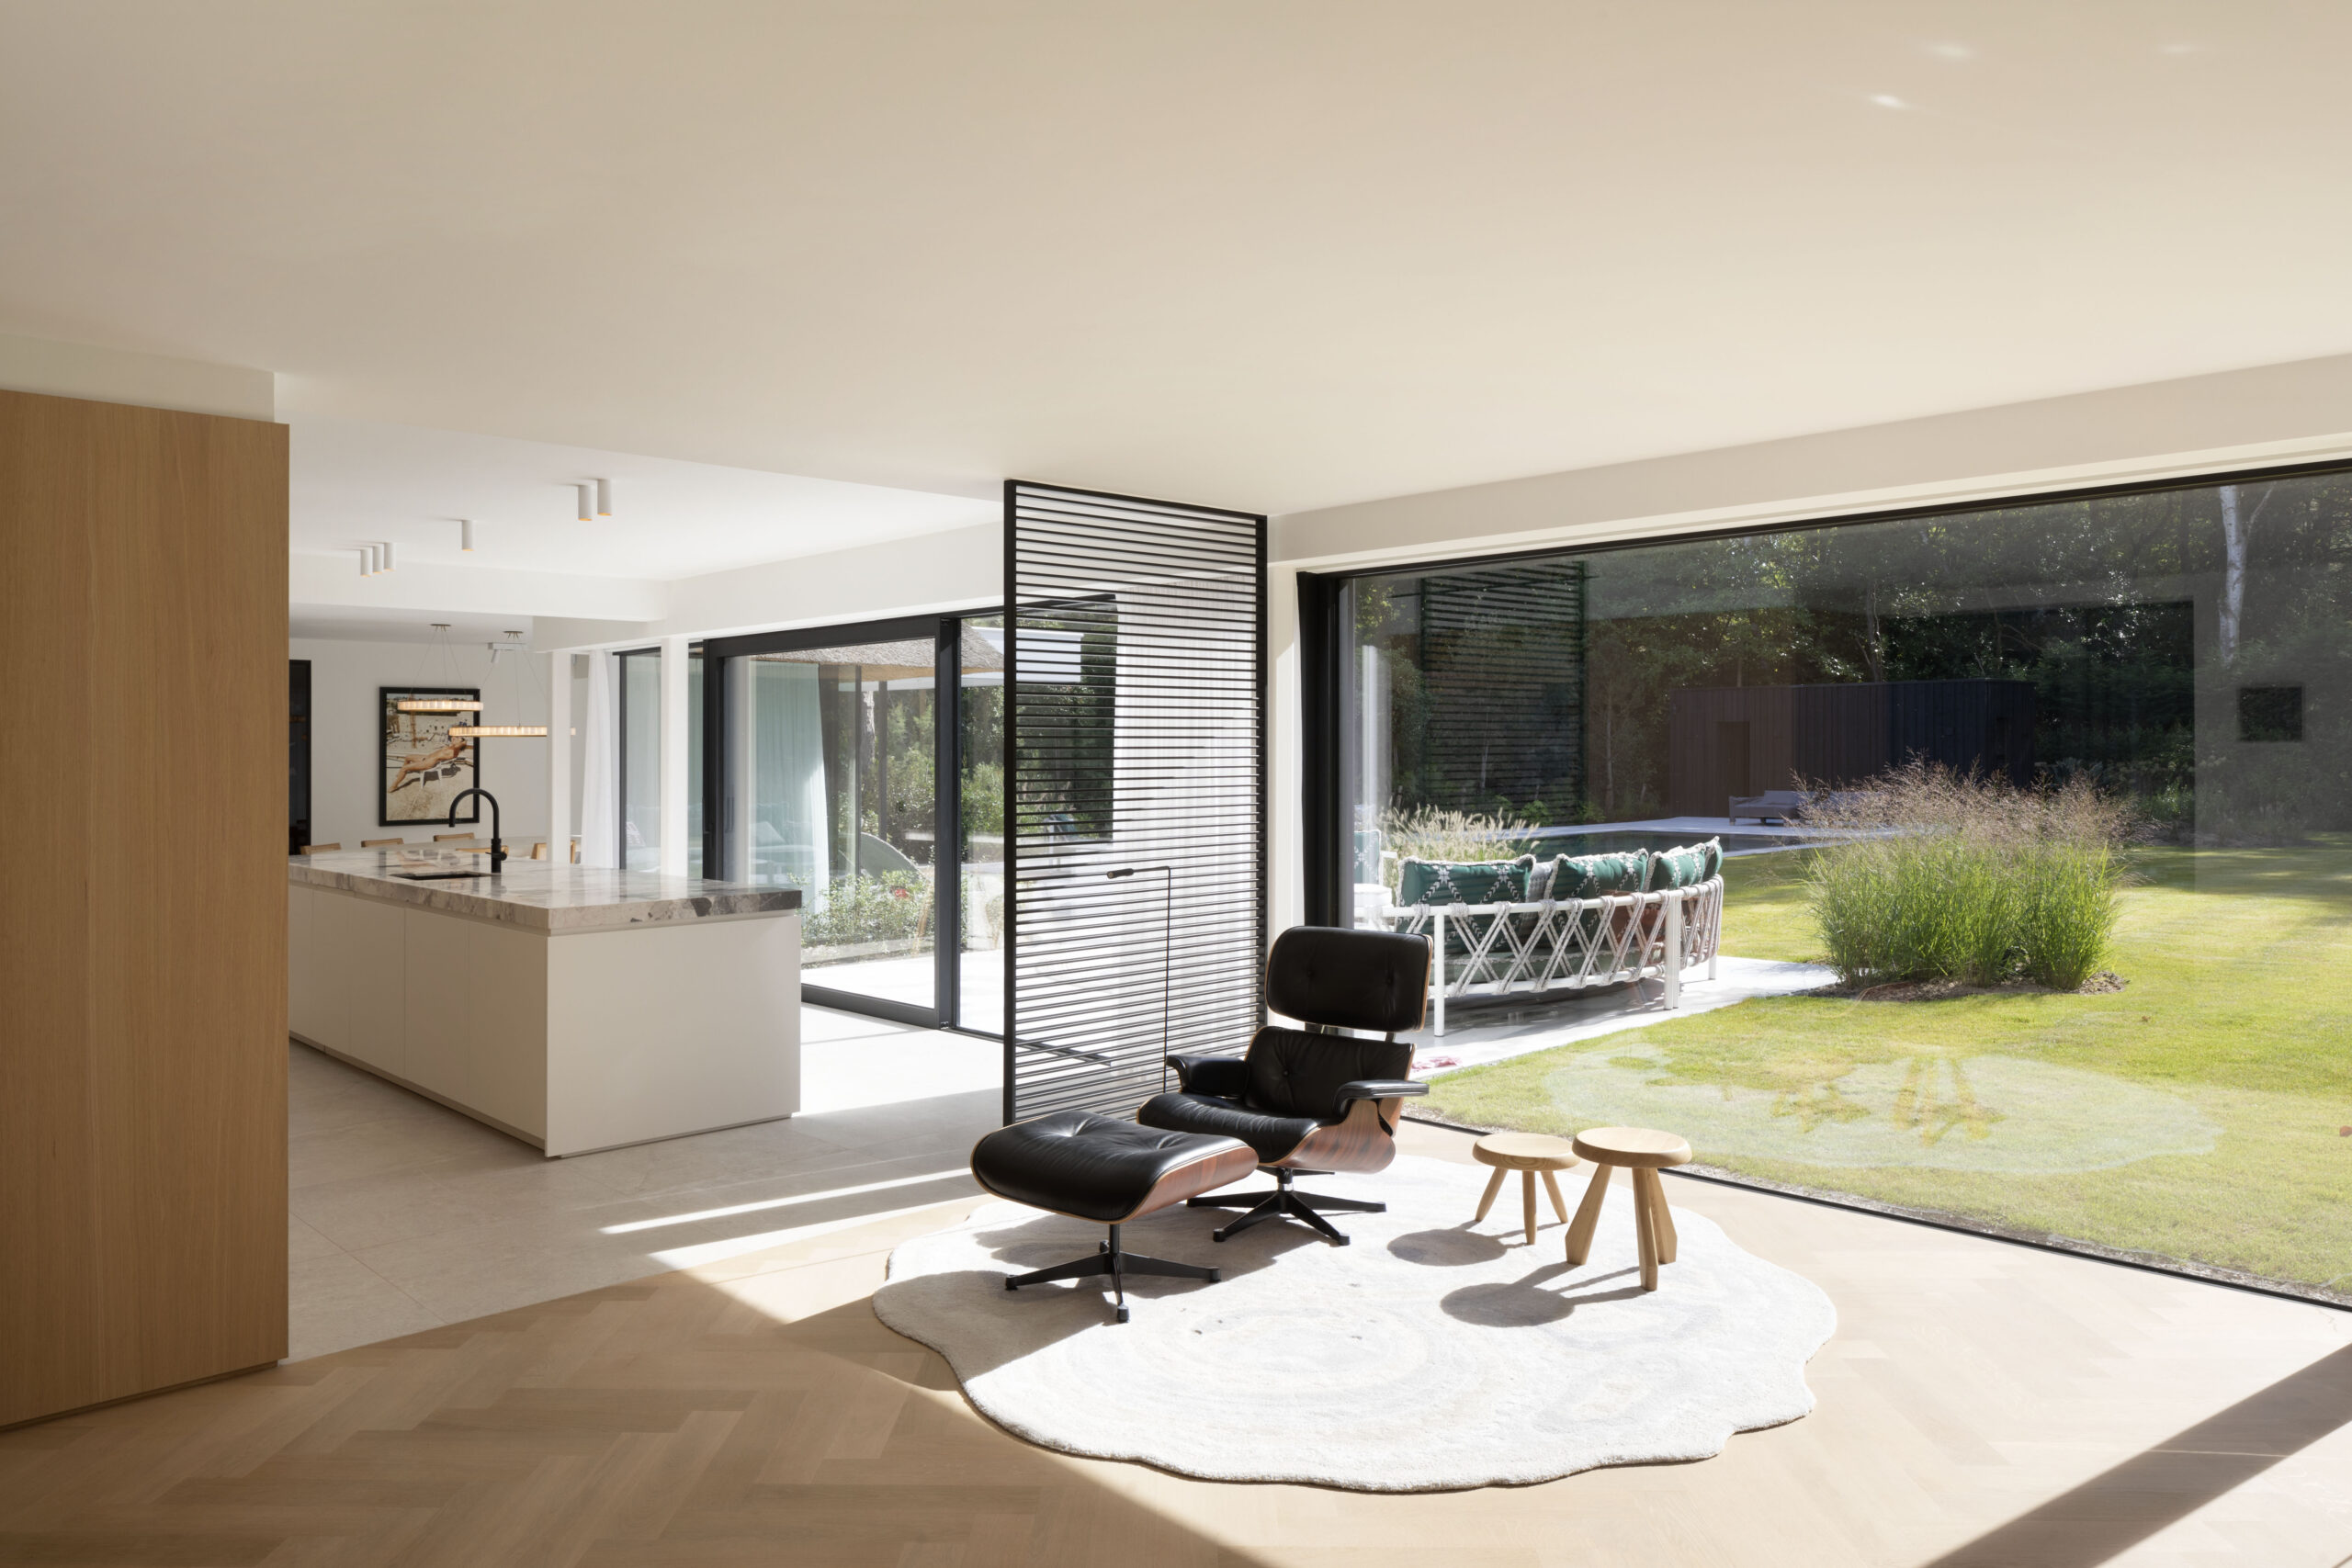 Een lichte woonruimte met grote ramen, een moderne zwarte stoel, een wit keukeneiland en lichte houten vloeren.